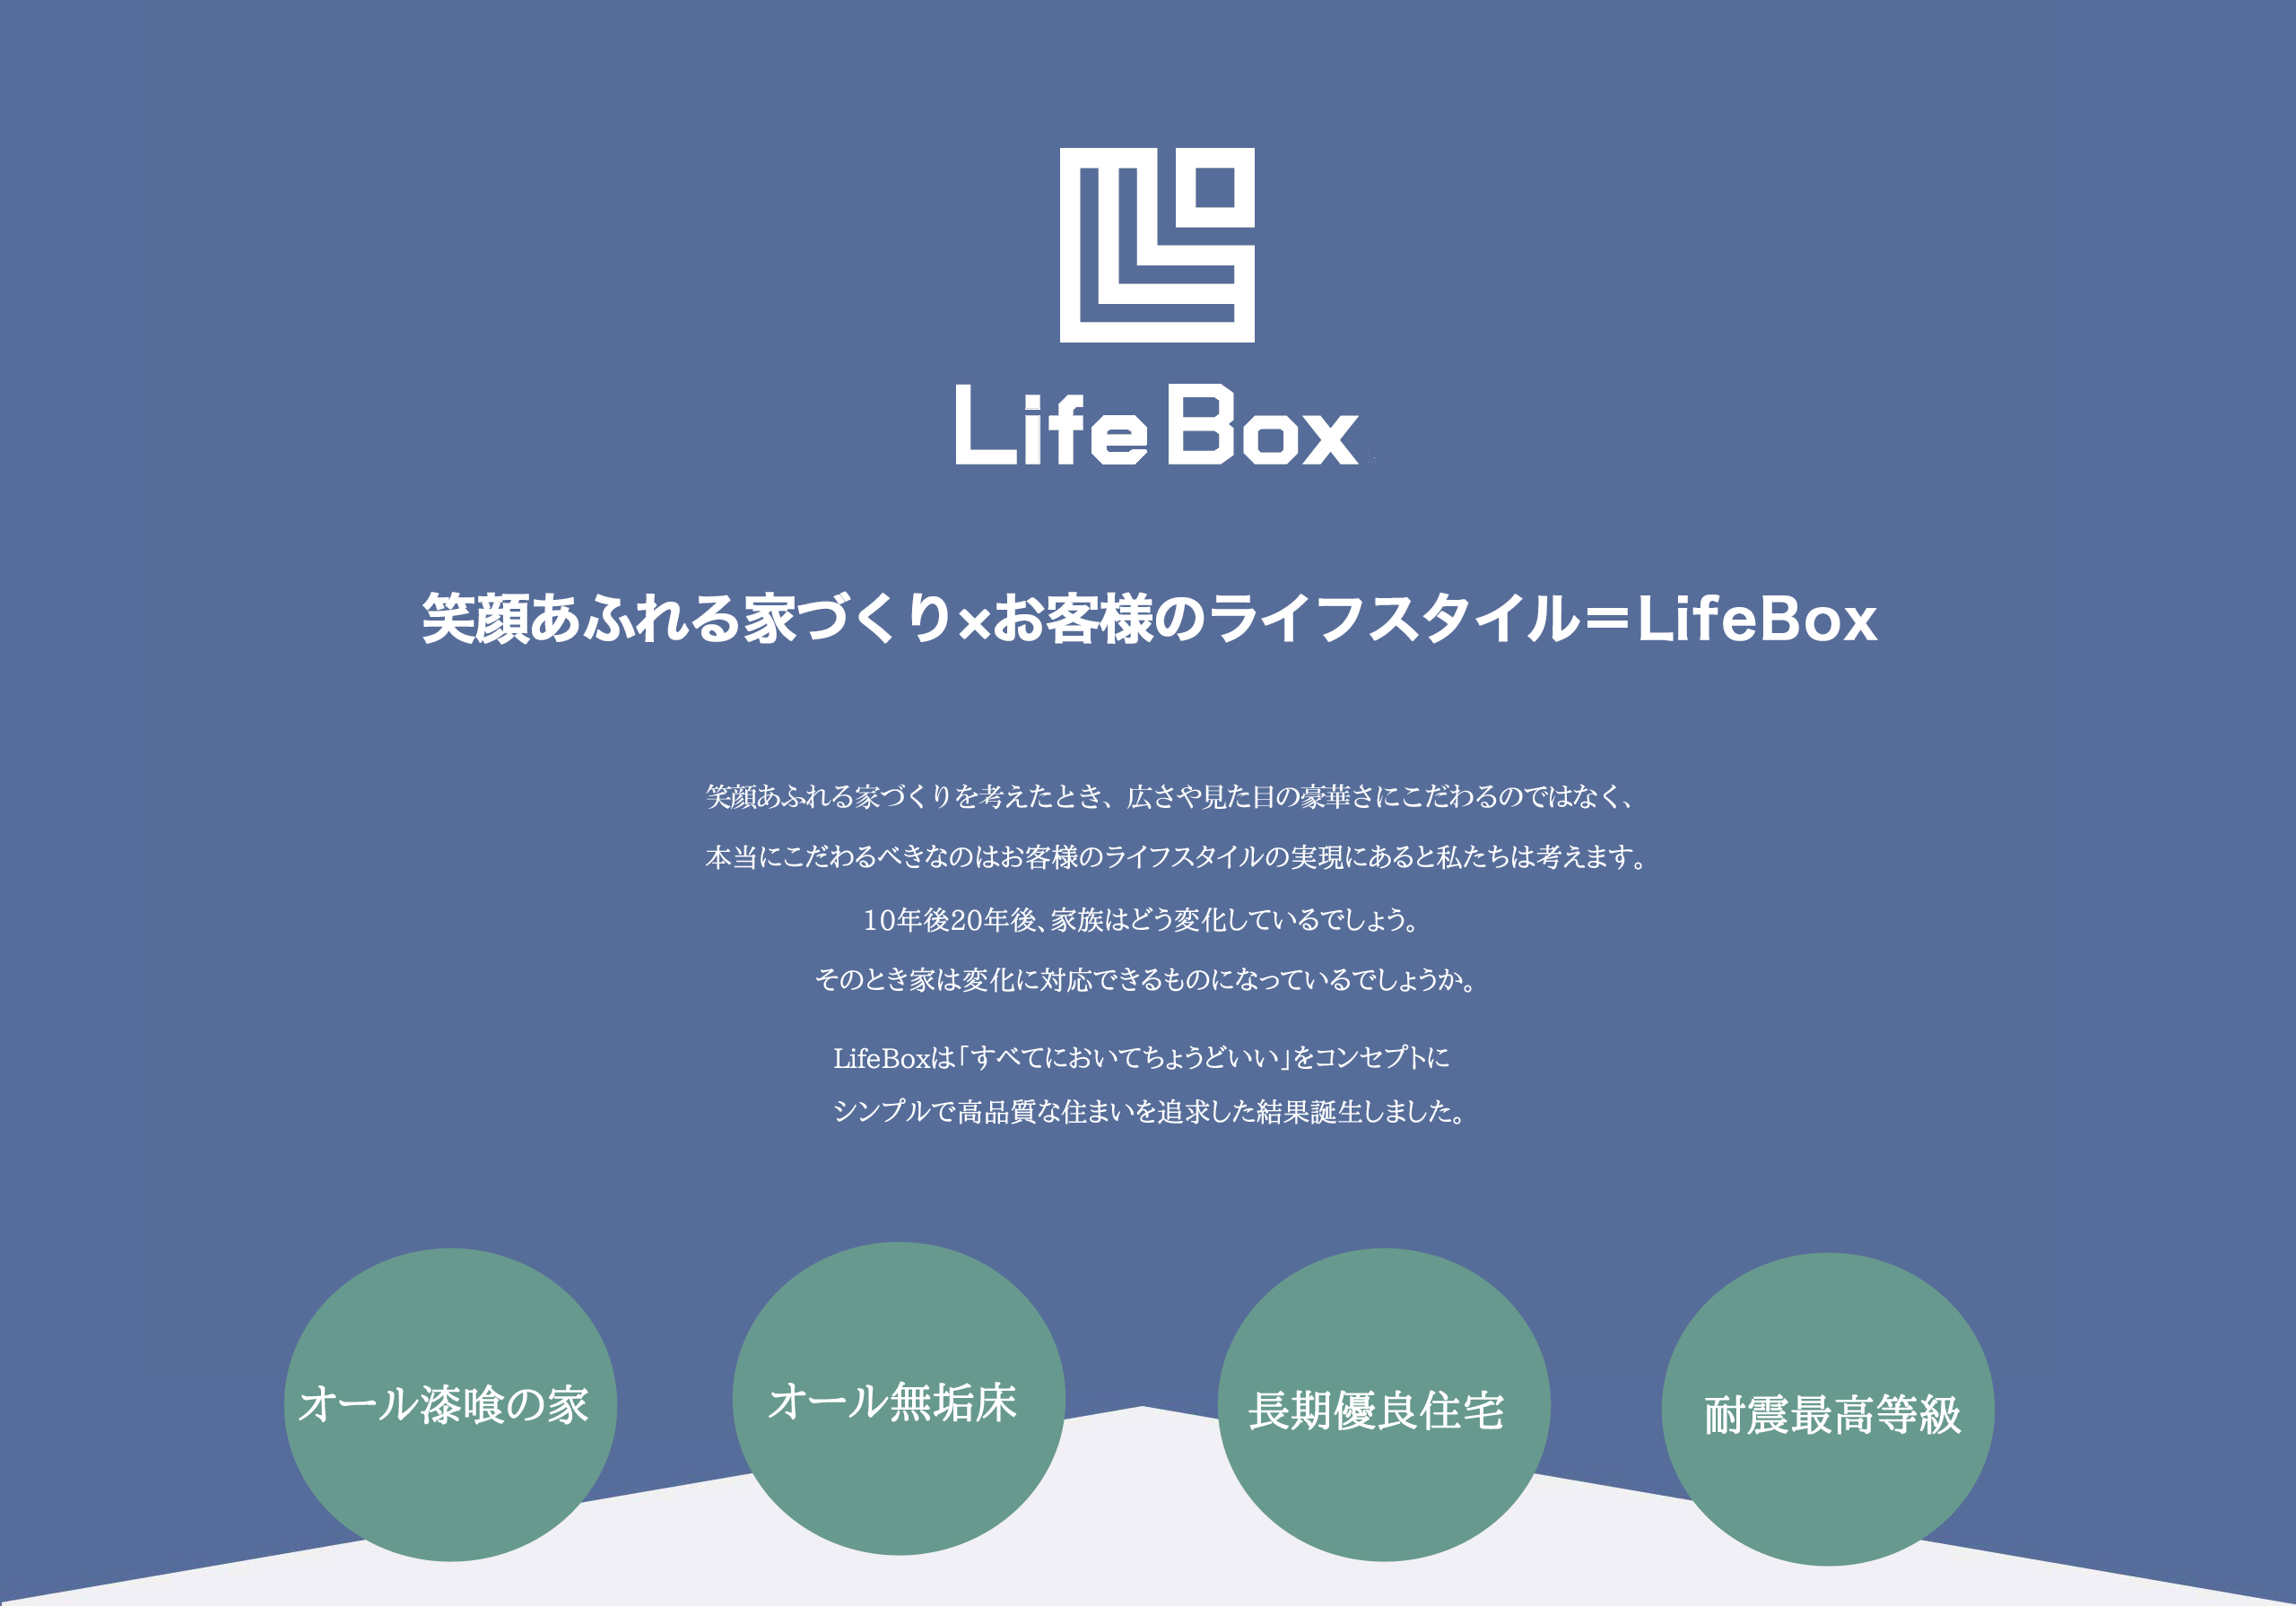 LifeBoxは皆が幸せになる家創りを実現する住まい。すべてにおいてちょうどいいをコンセプトにしたデザイン住宅です。